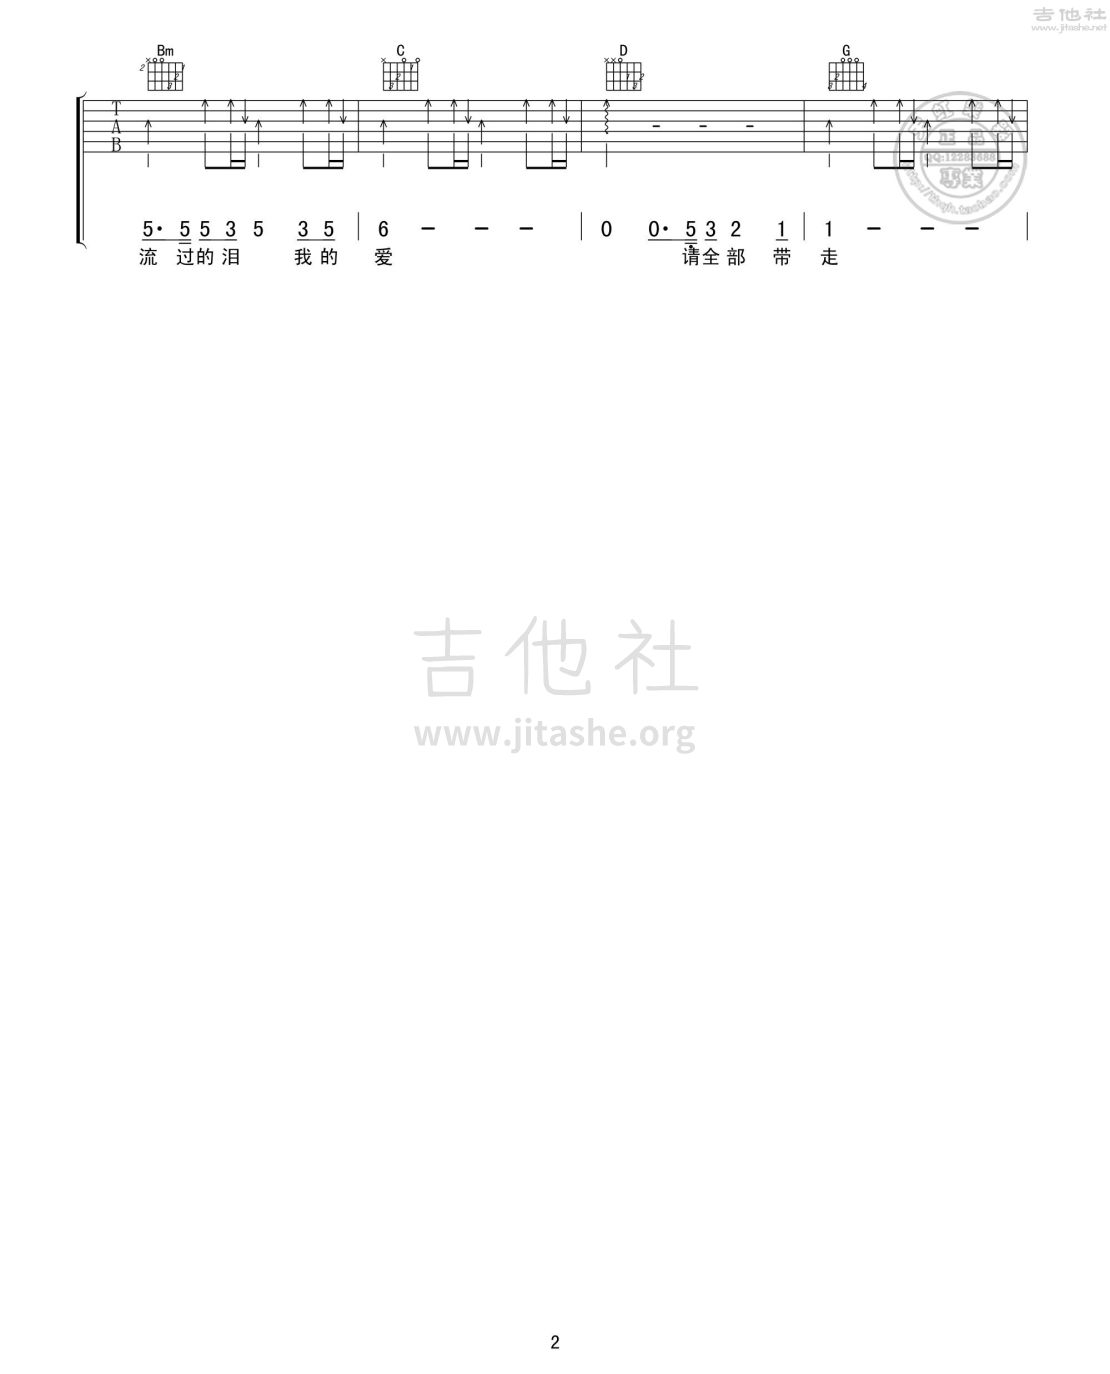 打印:大海吉他谱_张雨生(小宝)_大海02.jpg